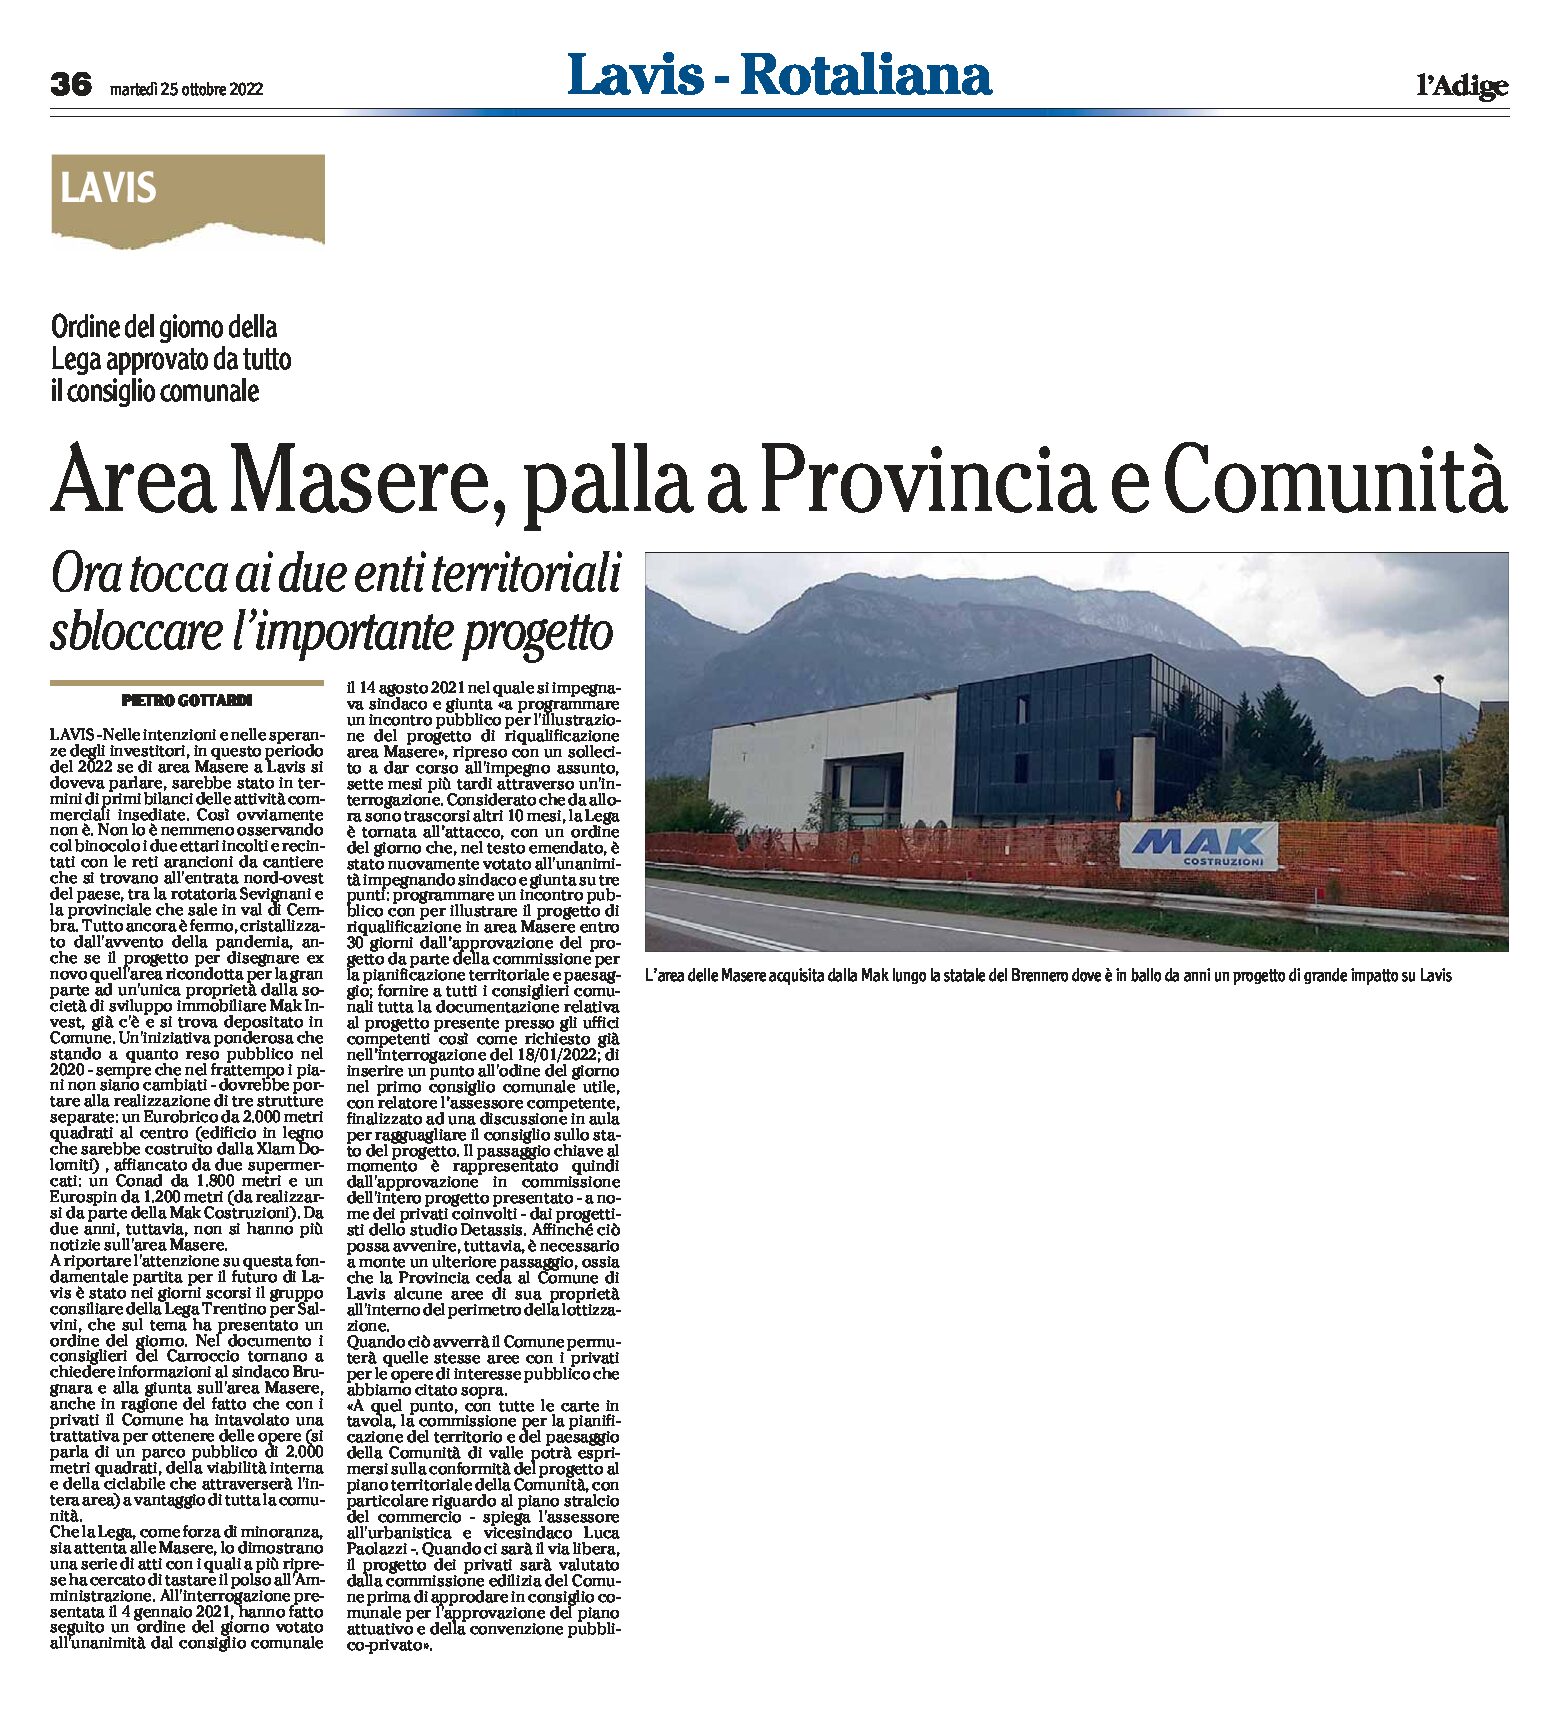 Lavis, area Masere: ora tocca ai due enti territoriali sbloccare l’importante progetto